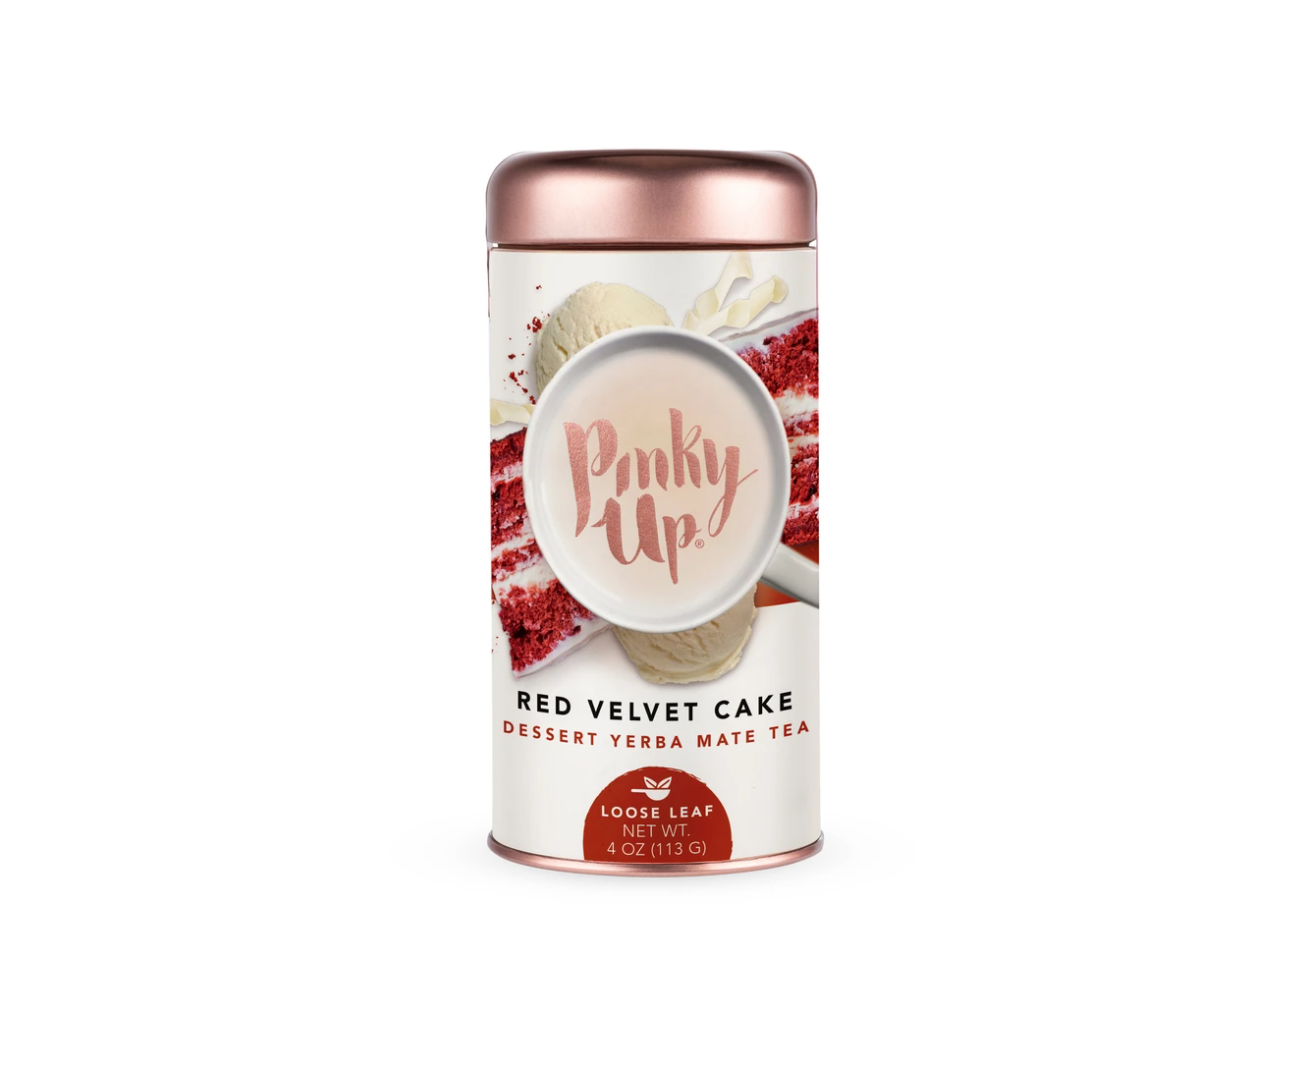 Pinky-Up-Tea-Red-Velvet-Cake-Loose-Leaf-Tea